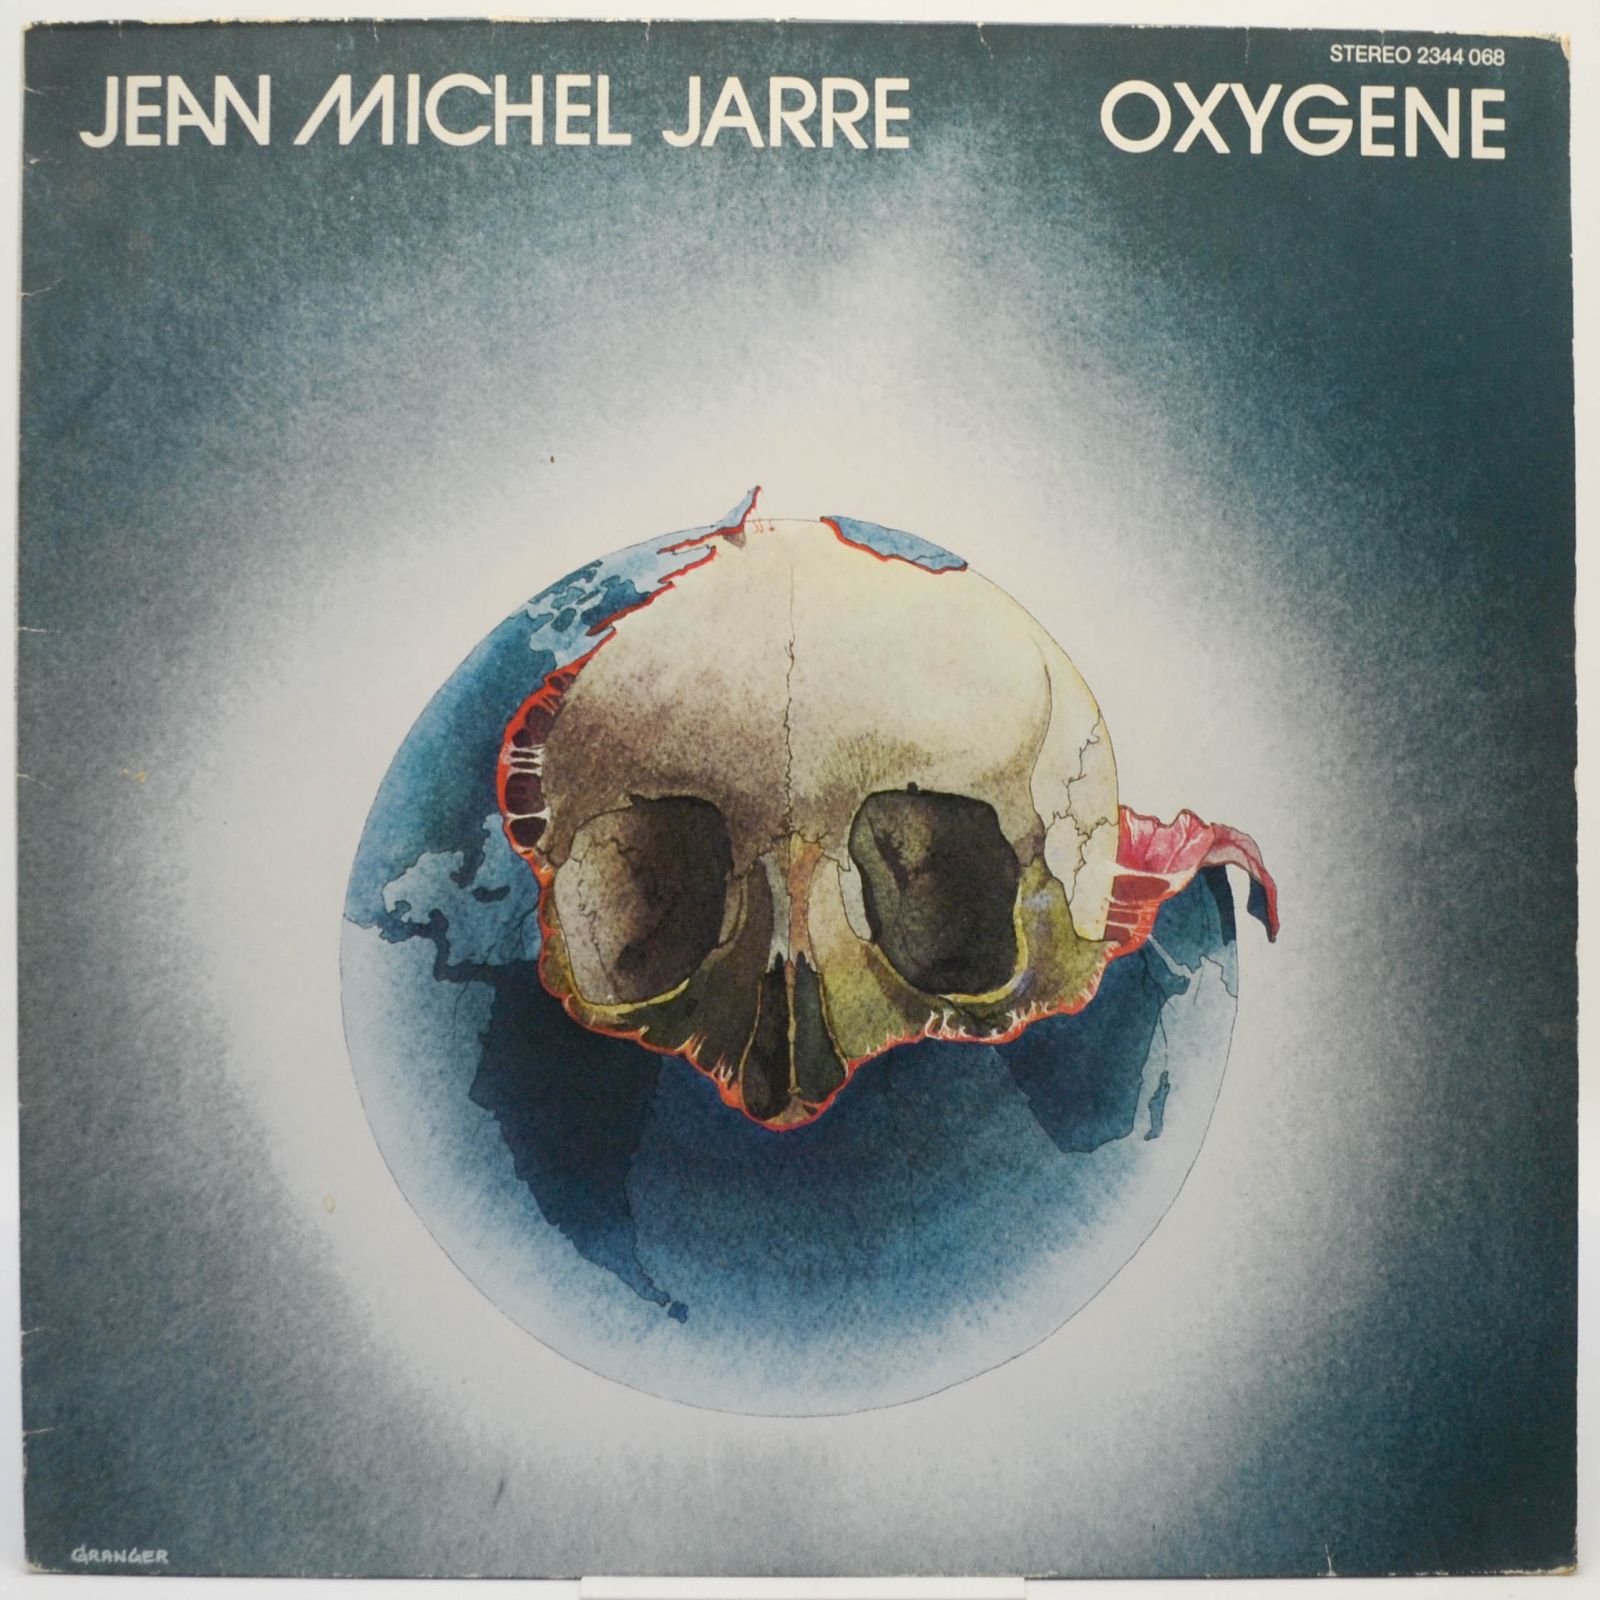 Jean Michel Jarre — Oxygene, 1976